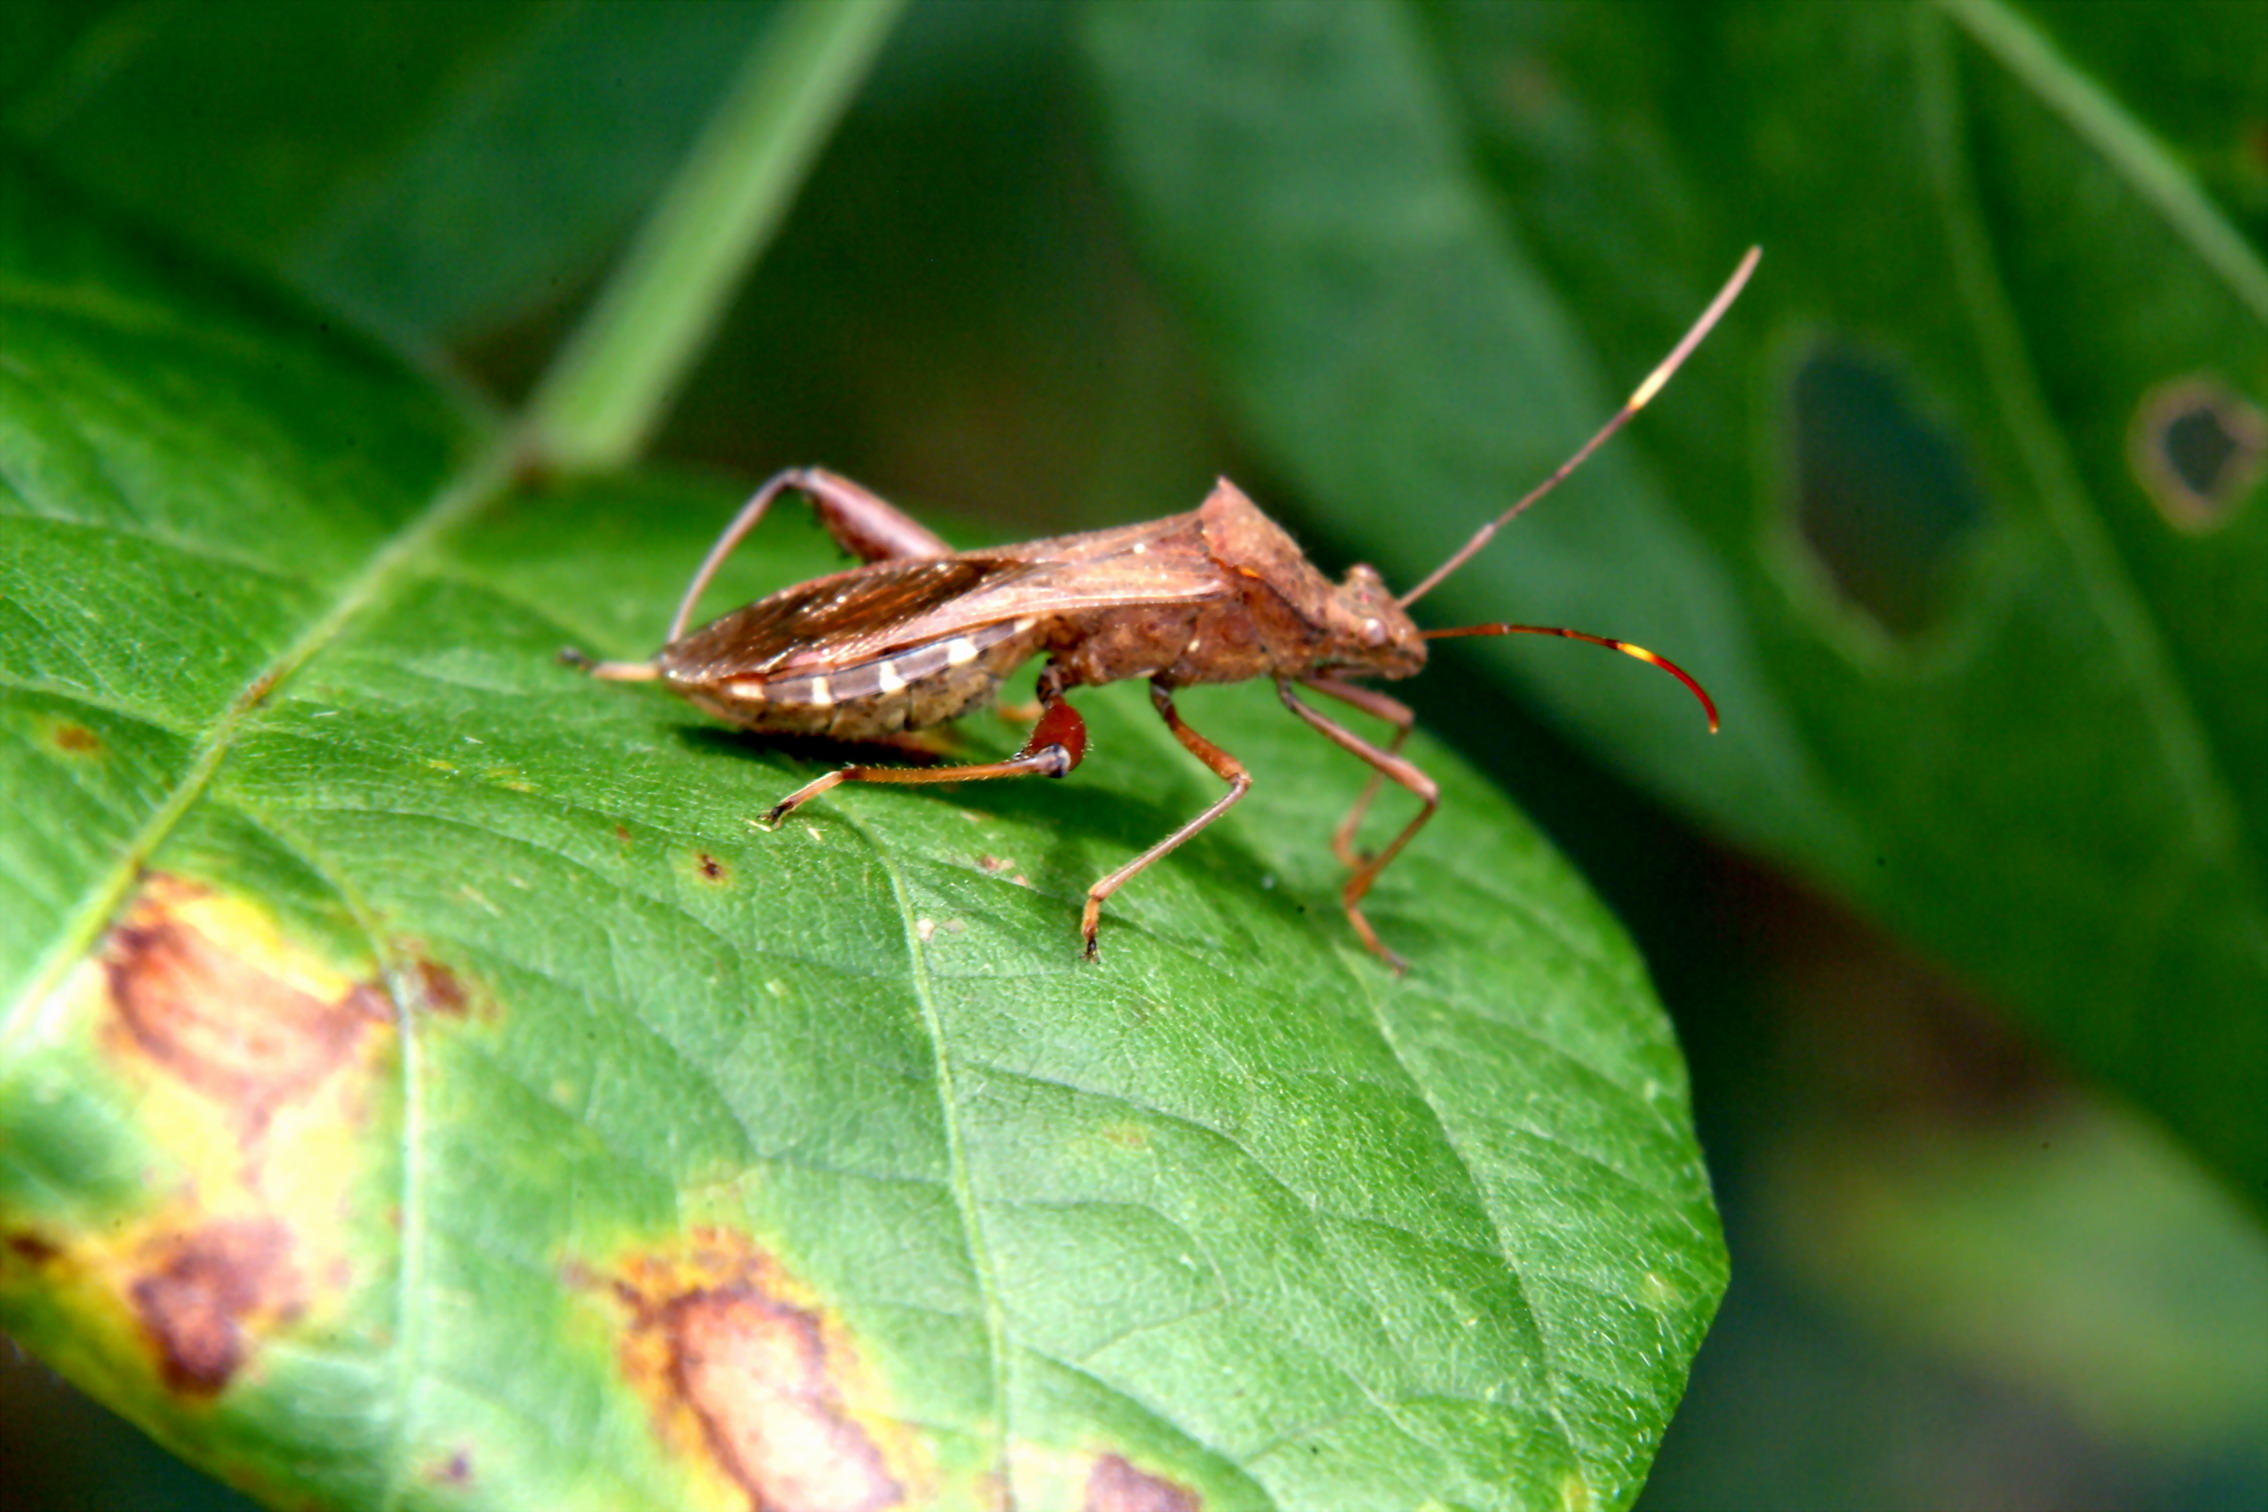 톱다리개미허리노린재 Riptortus clavatus (Bean Bug); Image ONLY